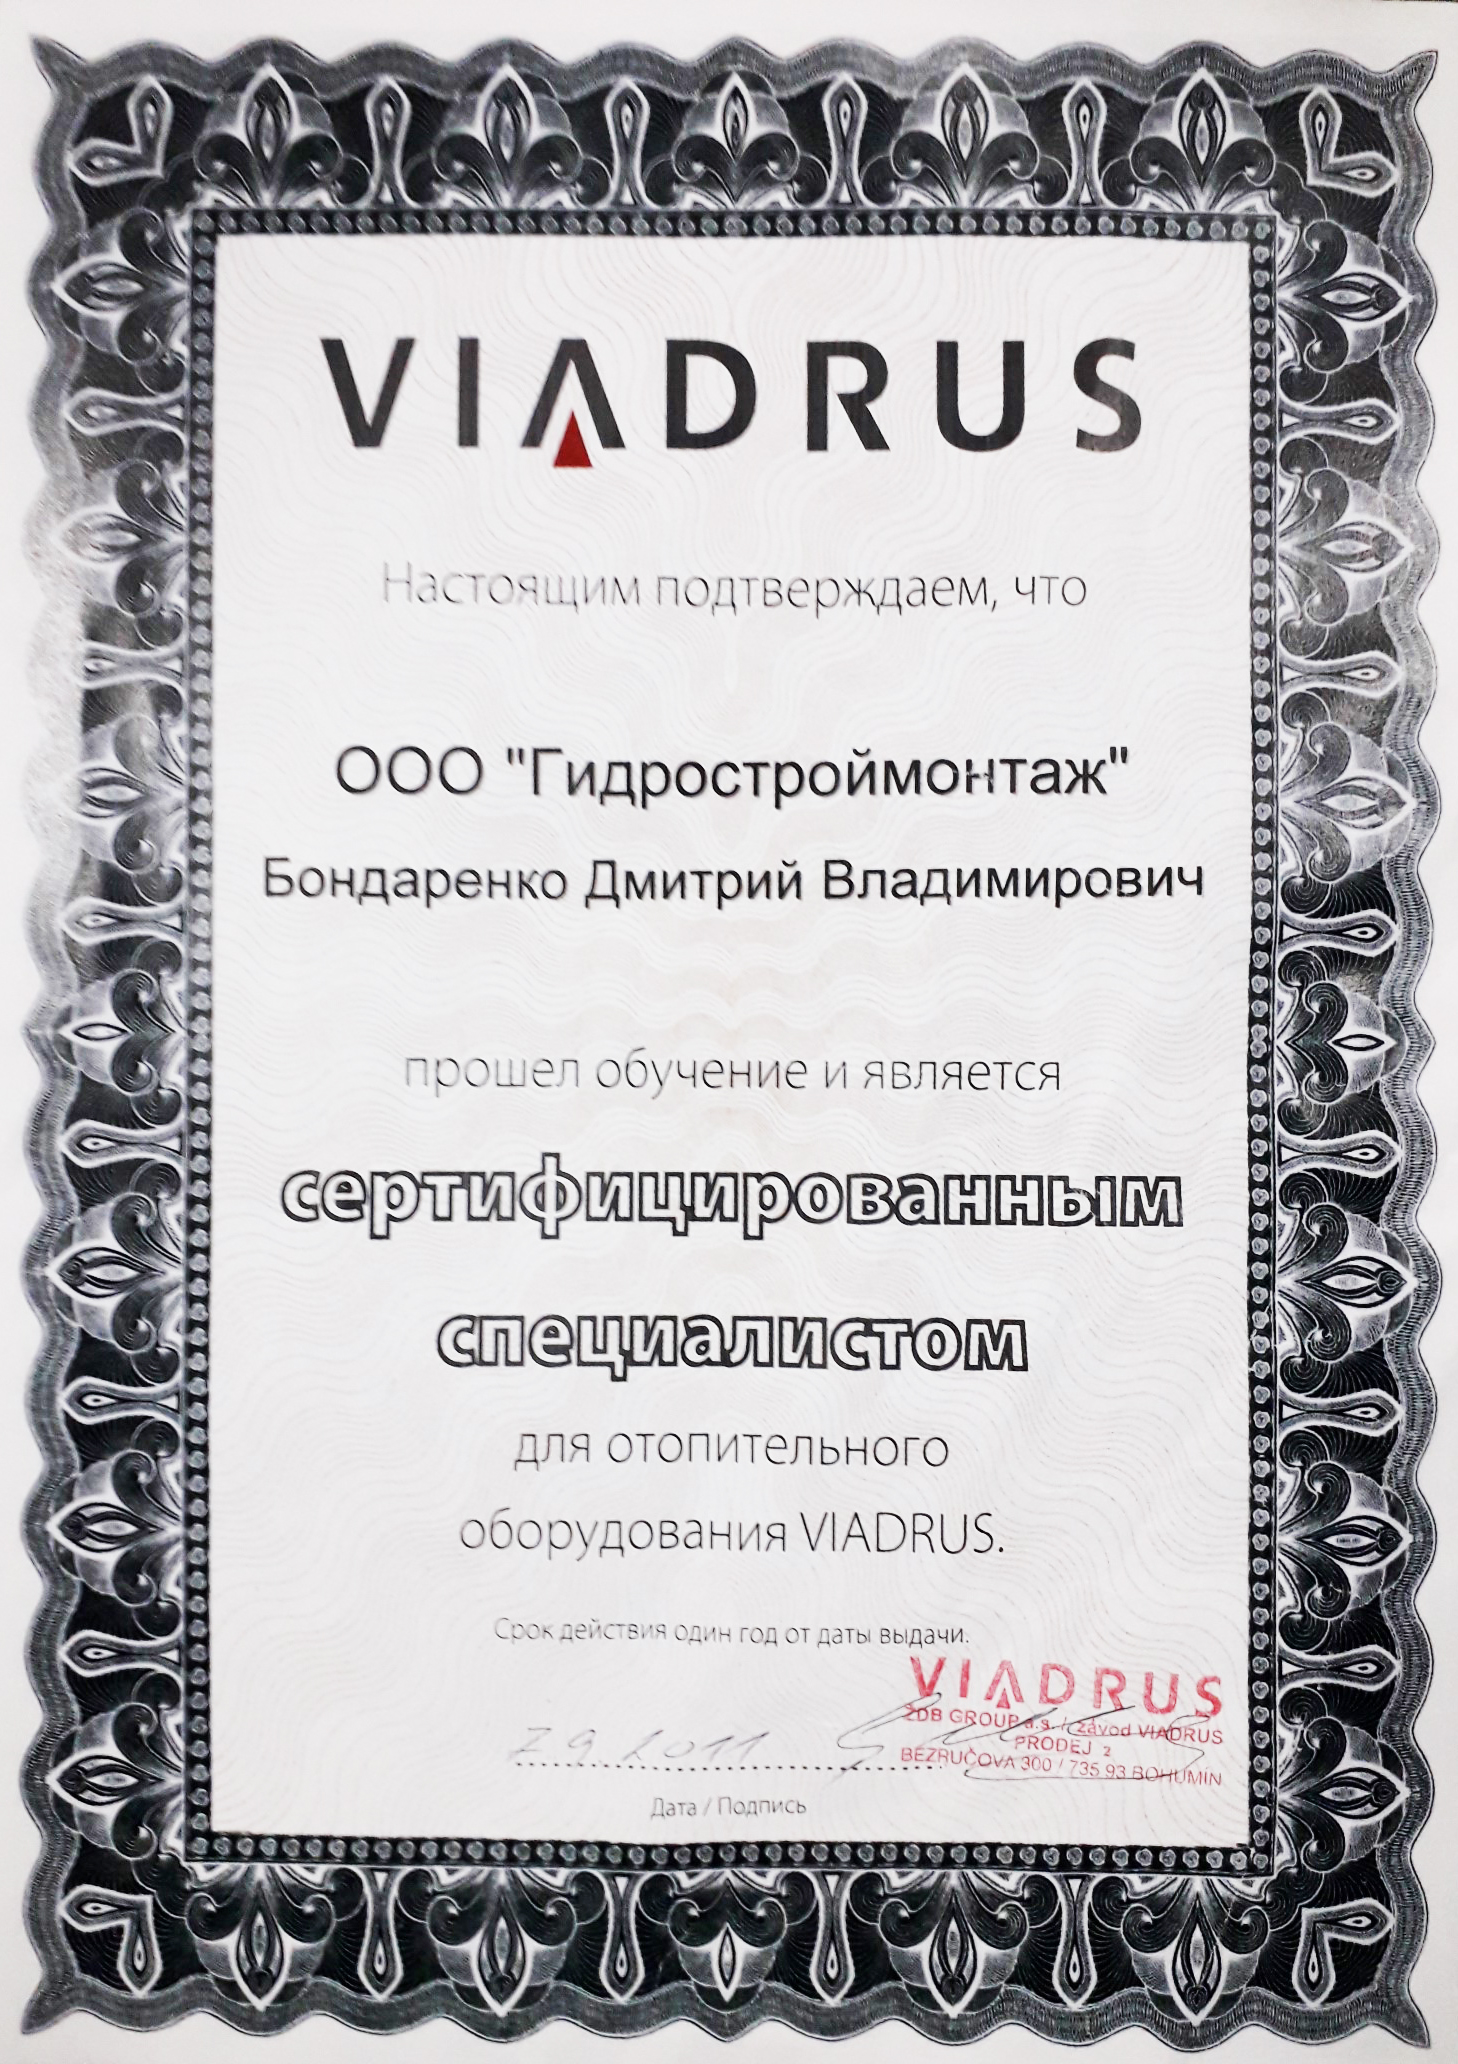 Сертификат отопительного оборудования VIADRUS